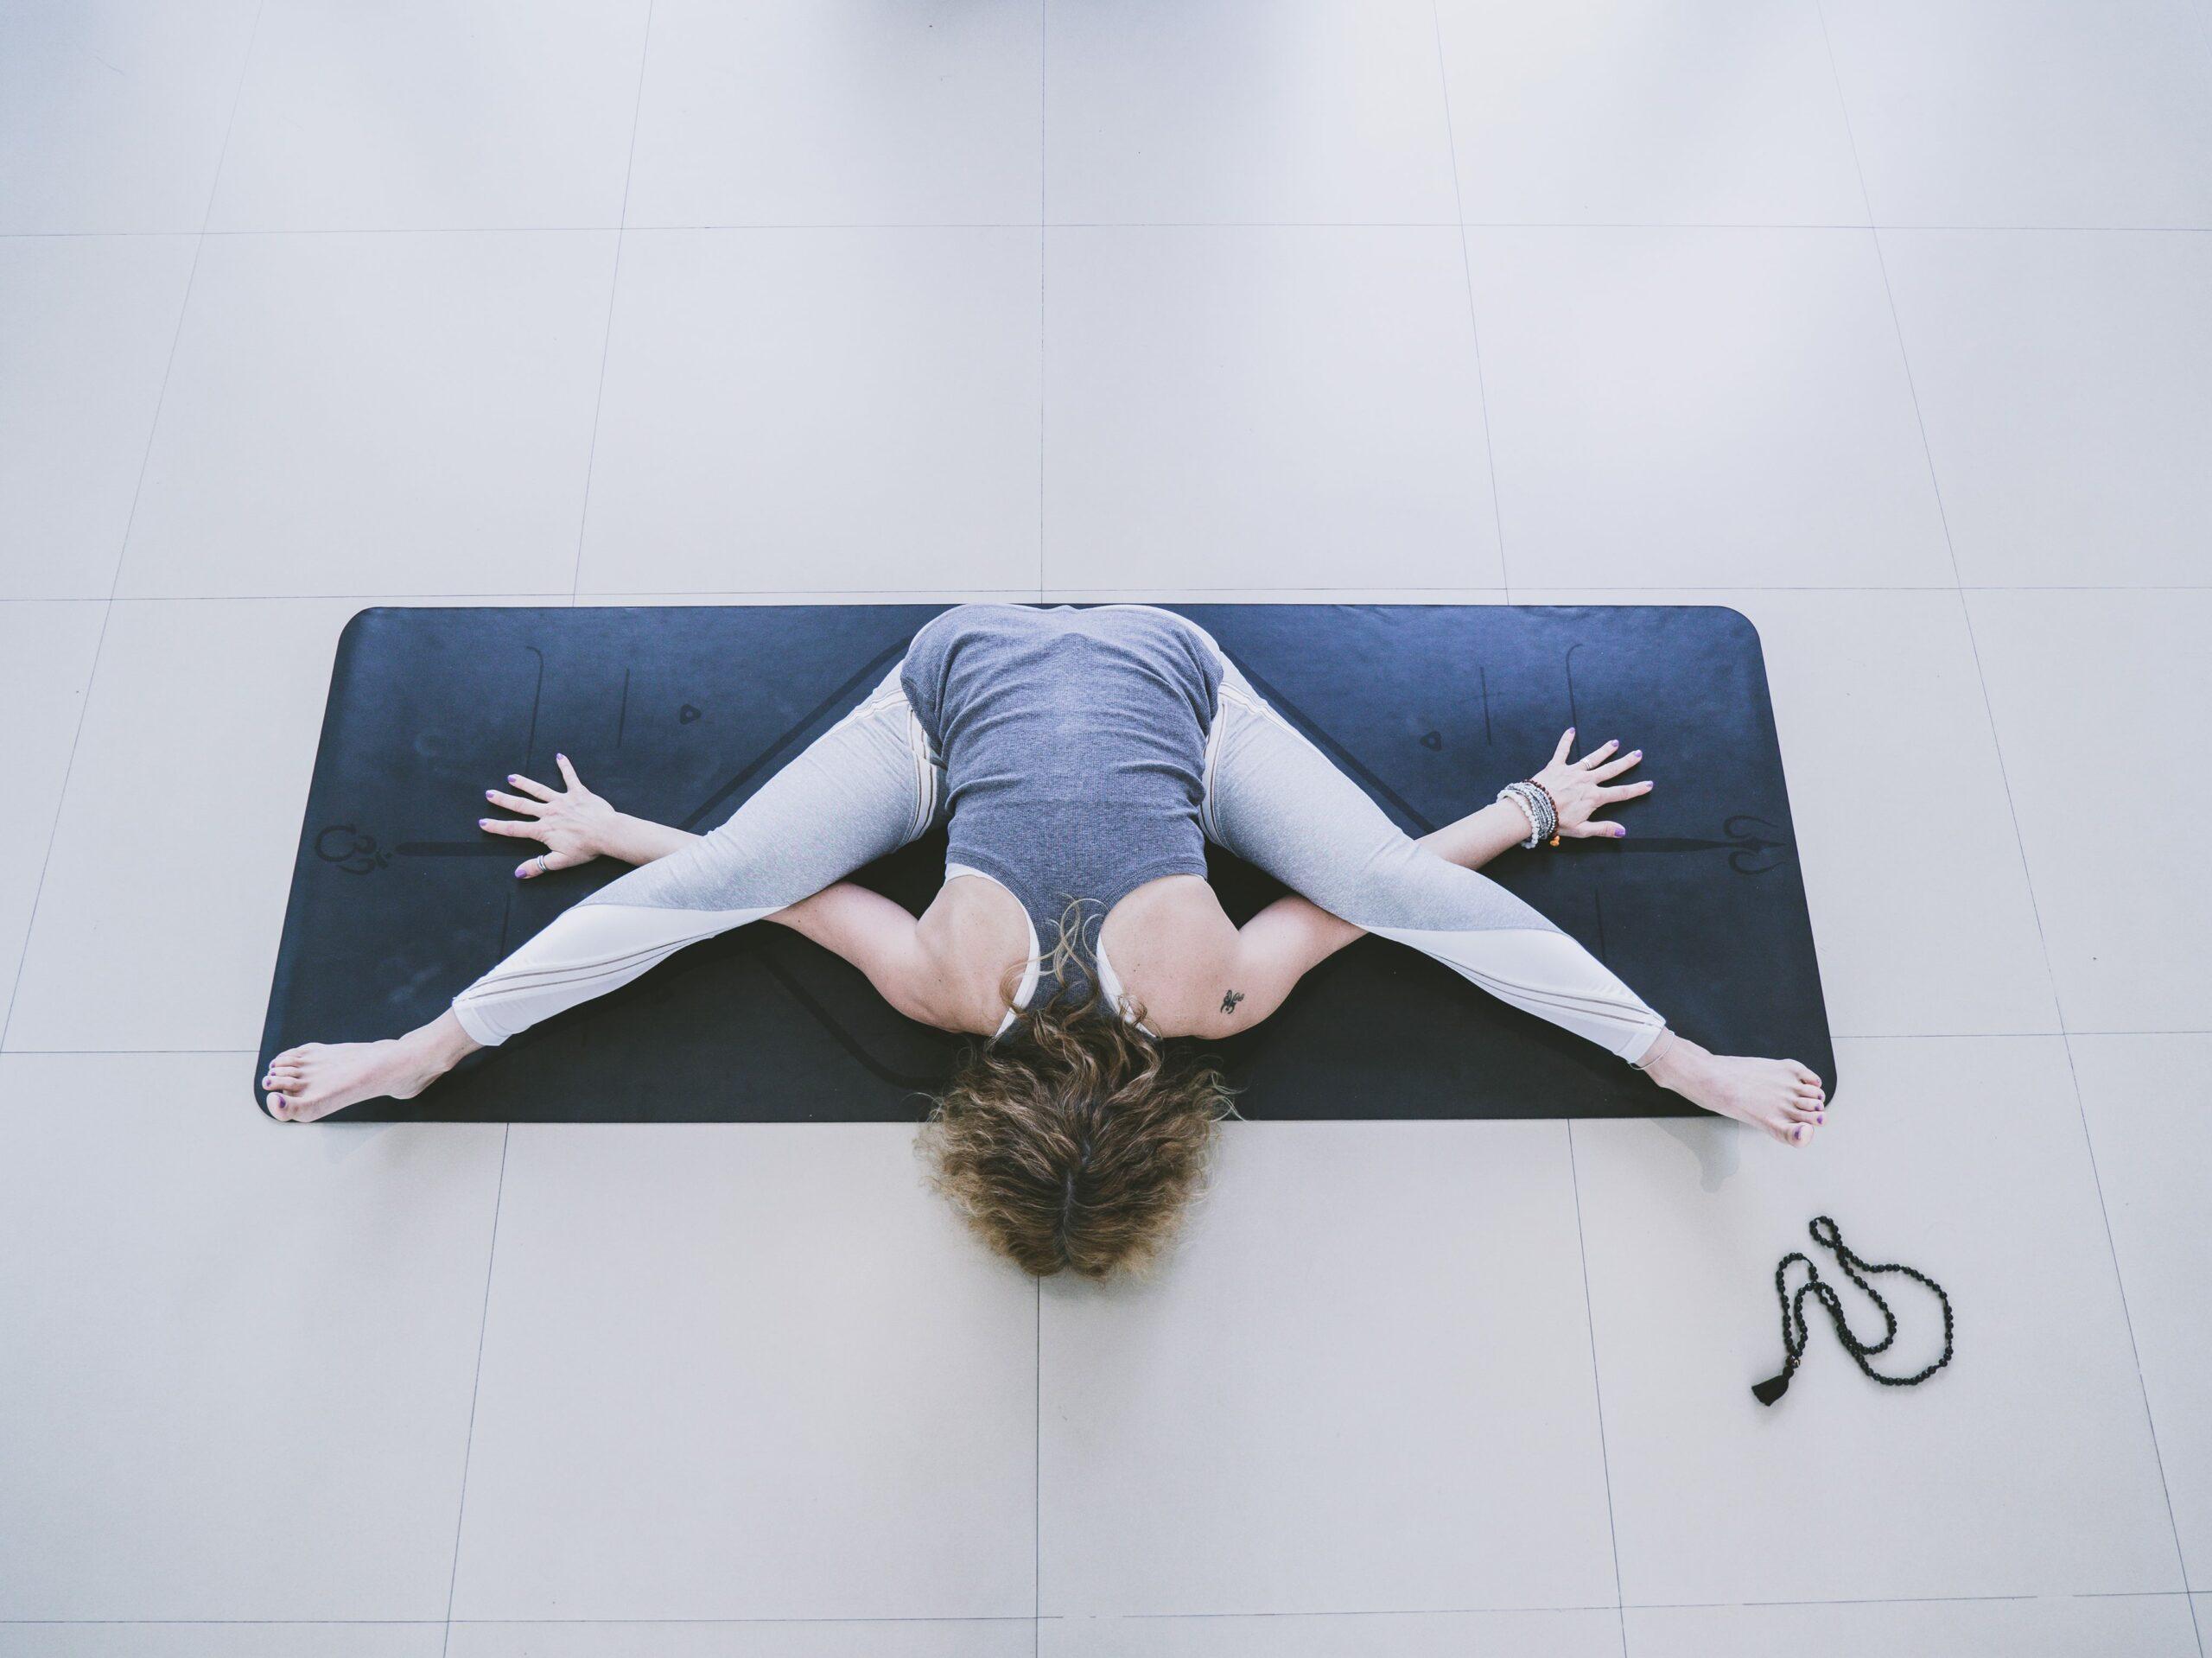 Lezione di yoga per vincere la paura